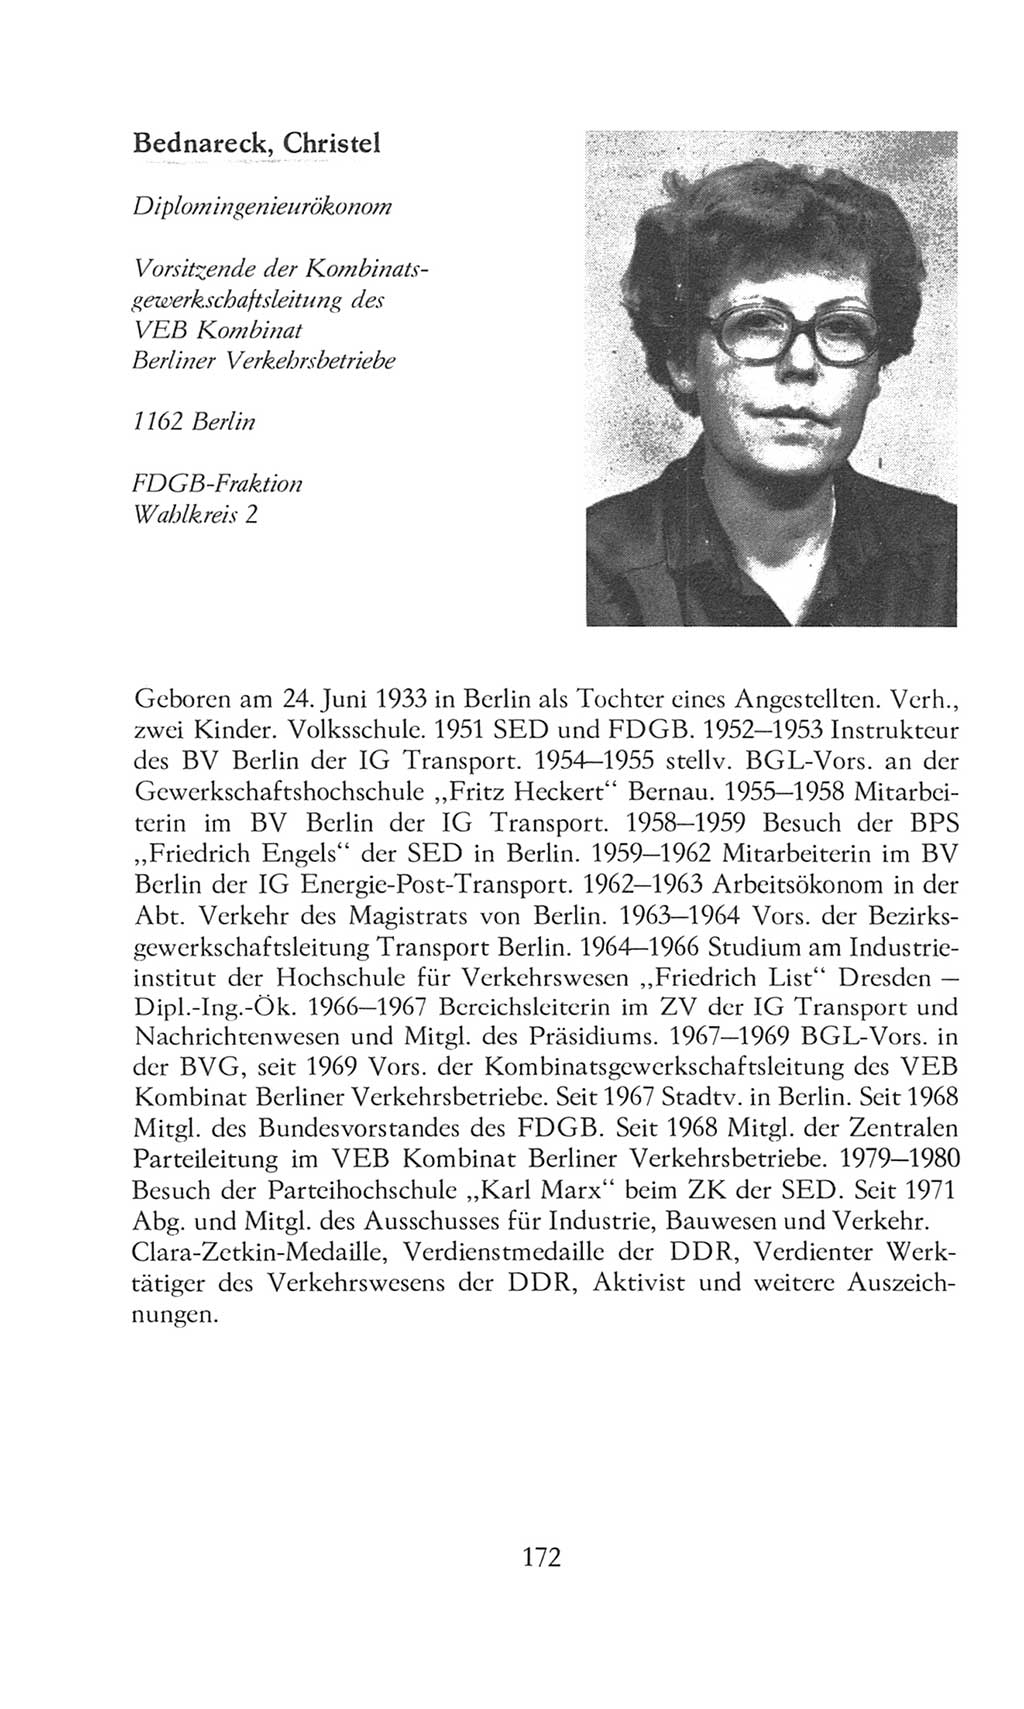 Volkskammer (VK) der Deutschen Demokratischen Republik (DDR), 8. Wahlperiode 1981-1986, Seite 172 (VK. DDR 8. WP. 1981-1986, S. 172)